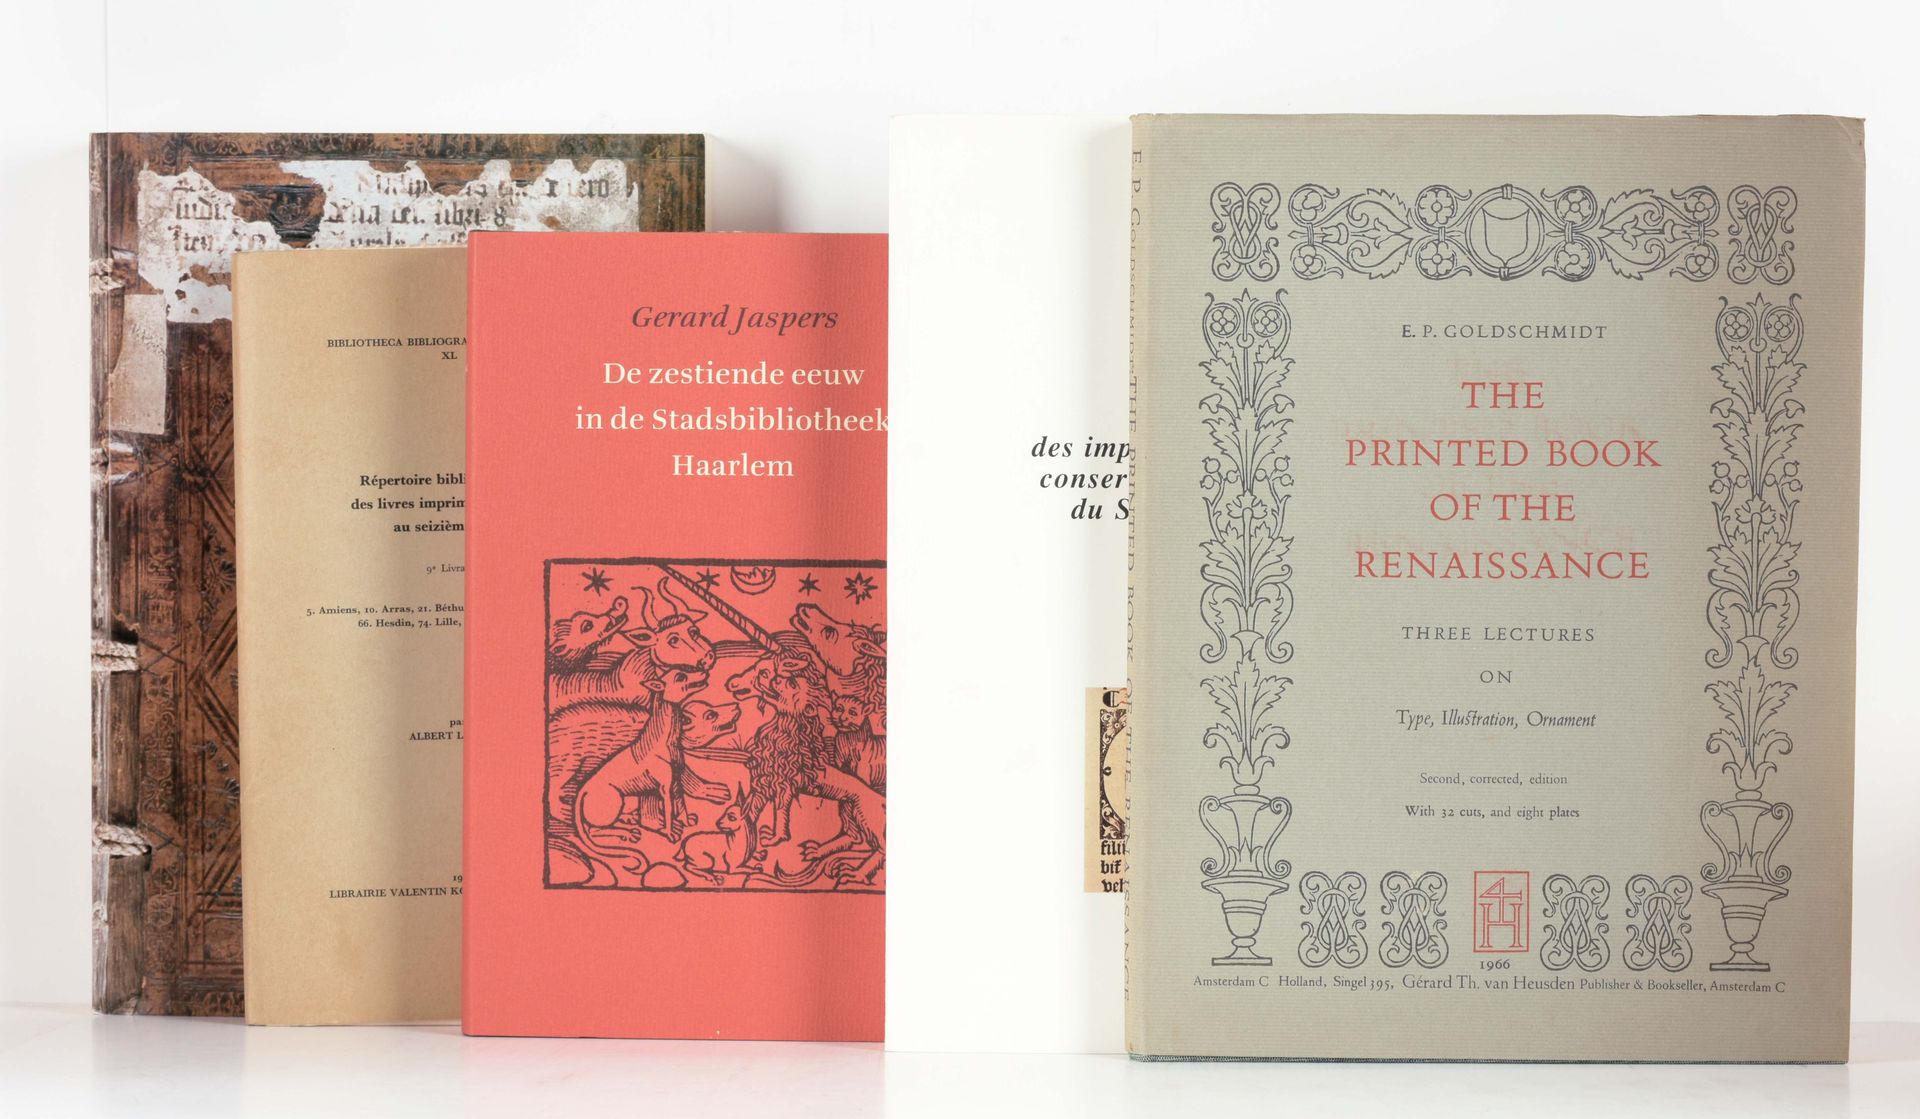 GOLDSCHMIDT, E.P. El libro impreso del Renacimiento, tres conferencias sobre el &hellip;